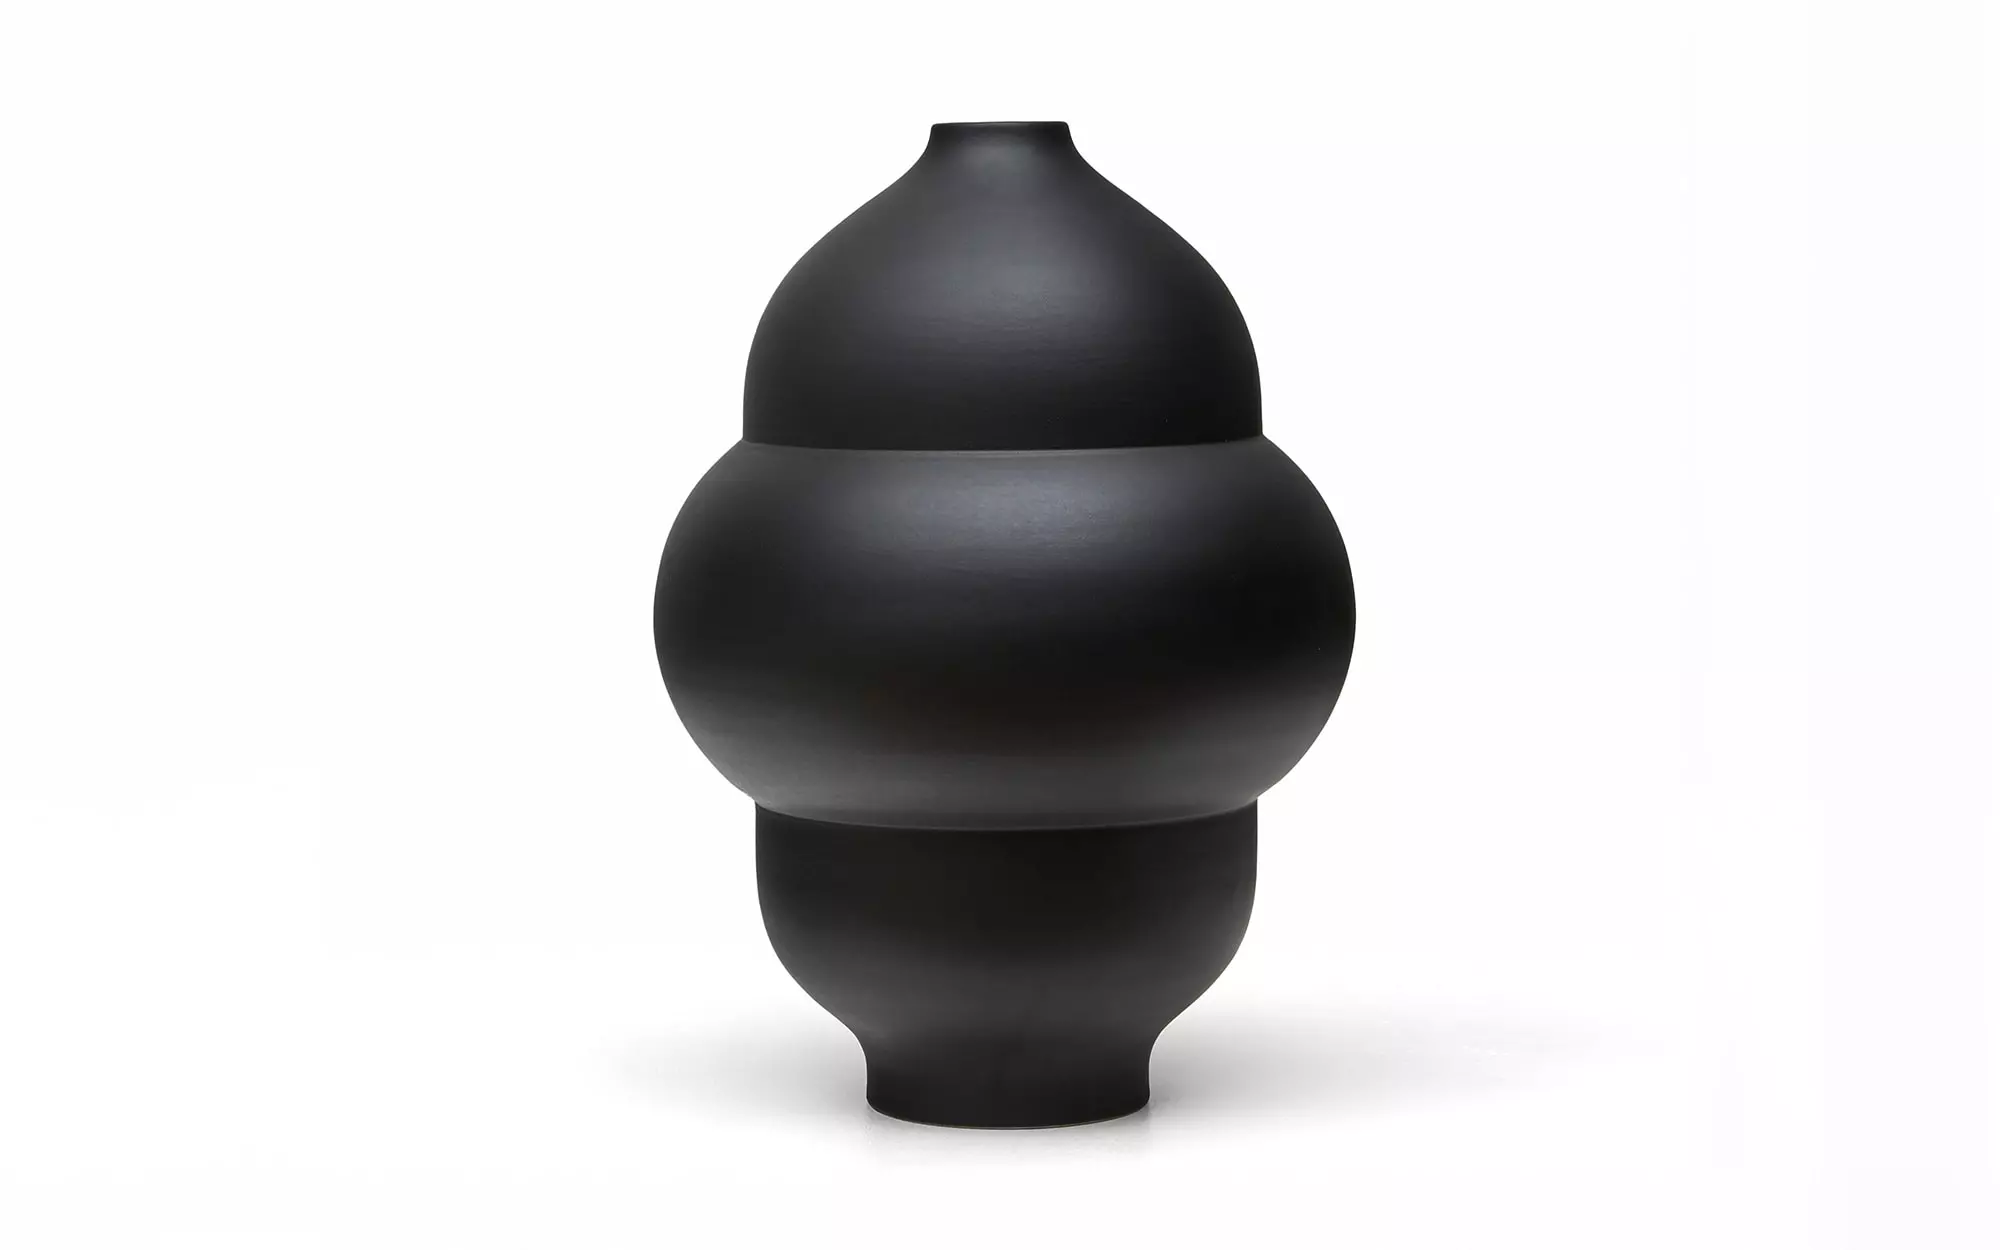 Plump - 1 Vase - Pierre Charpin - Vase - Galerie kreo